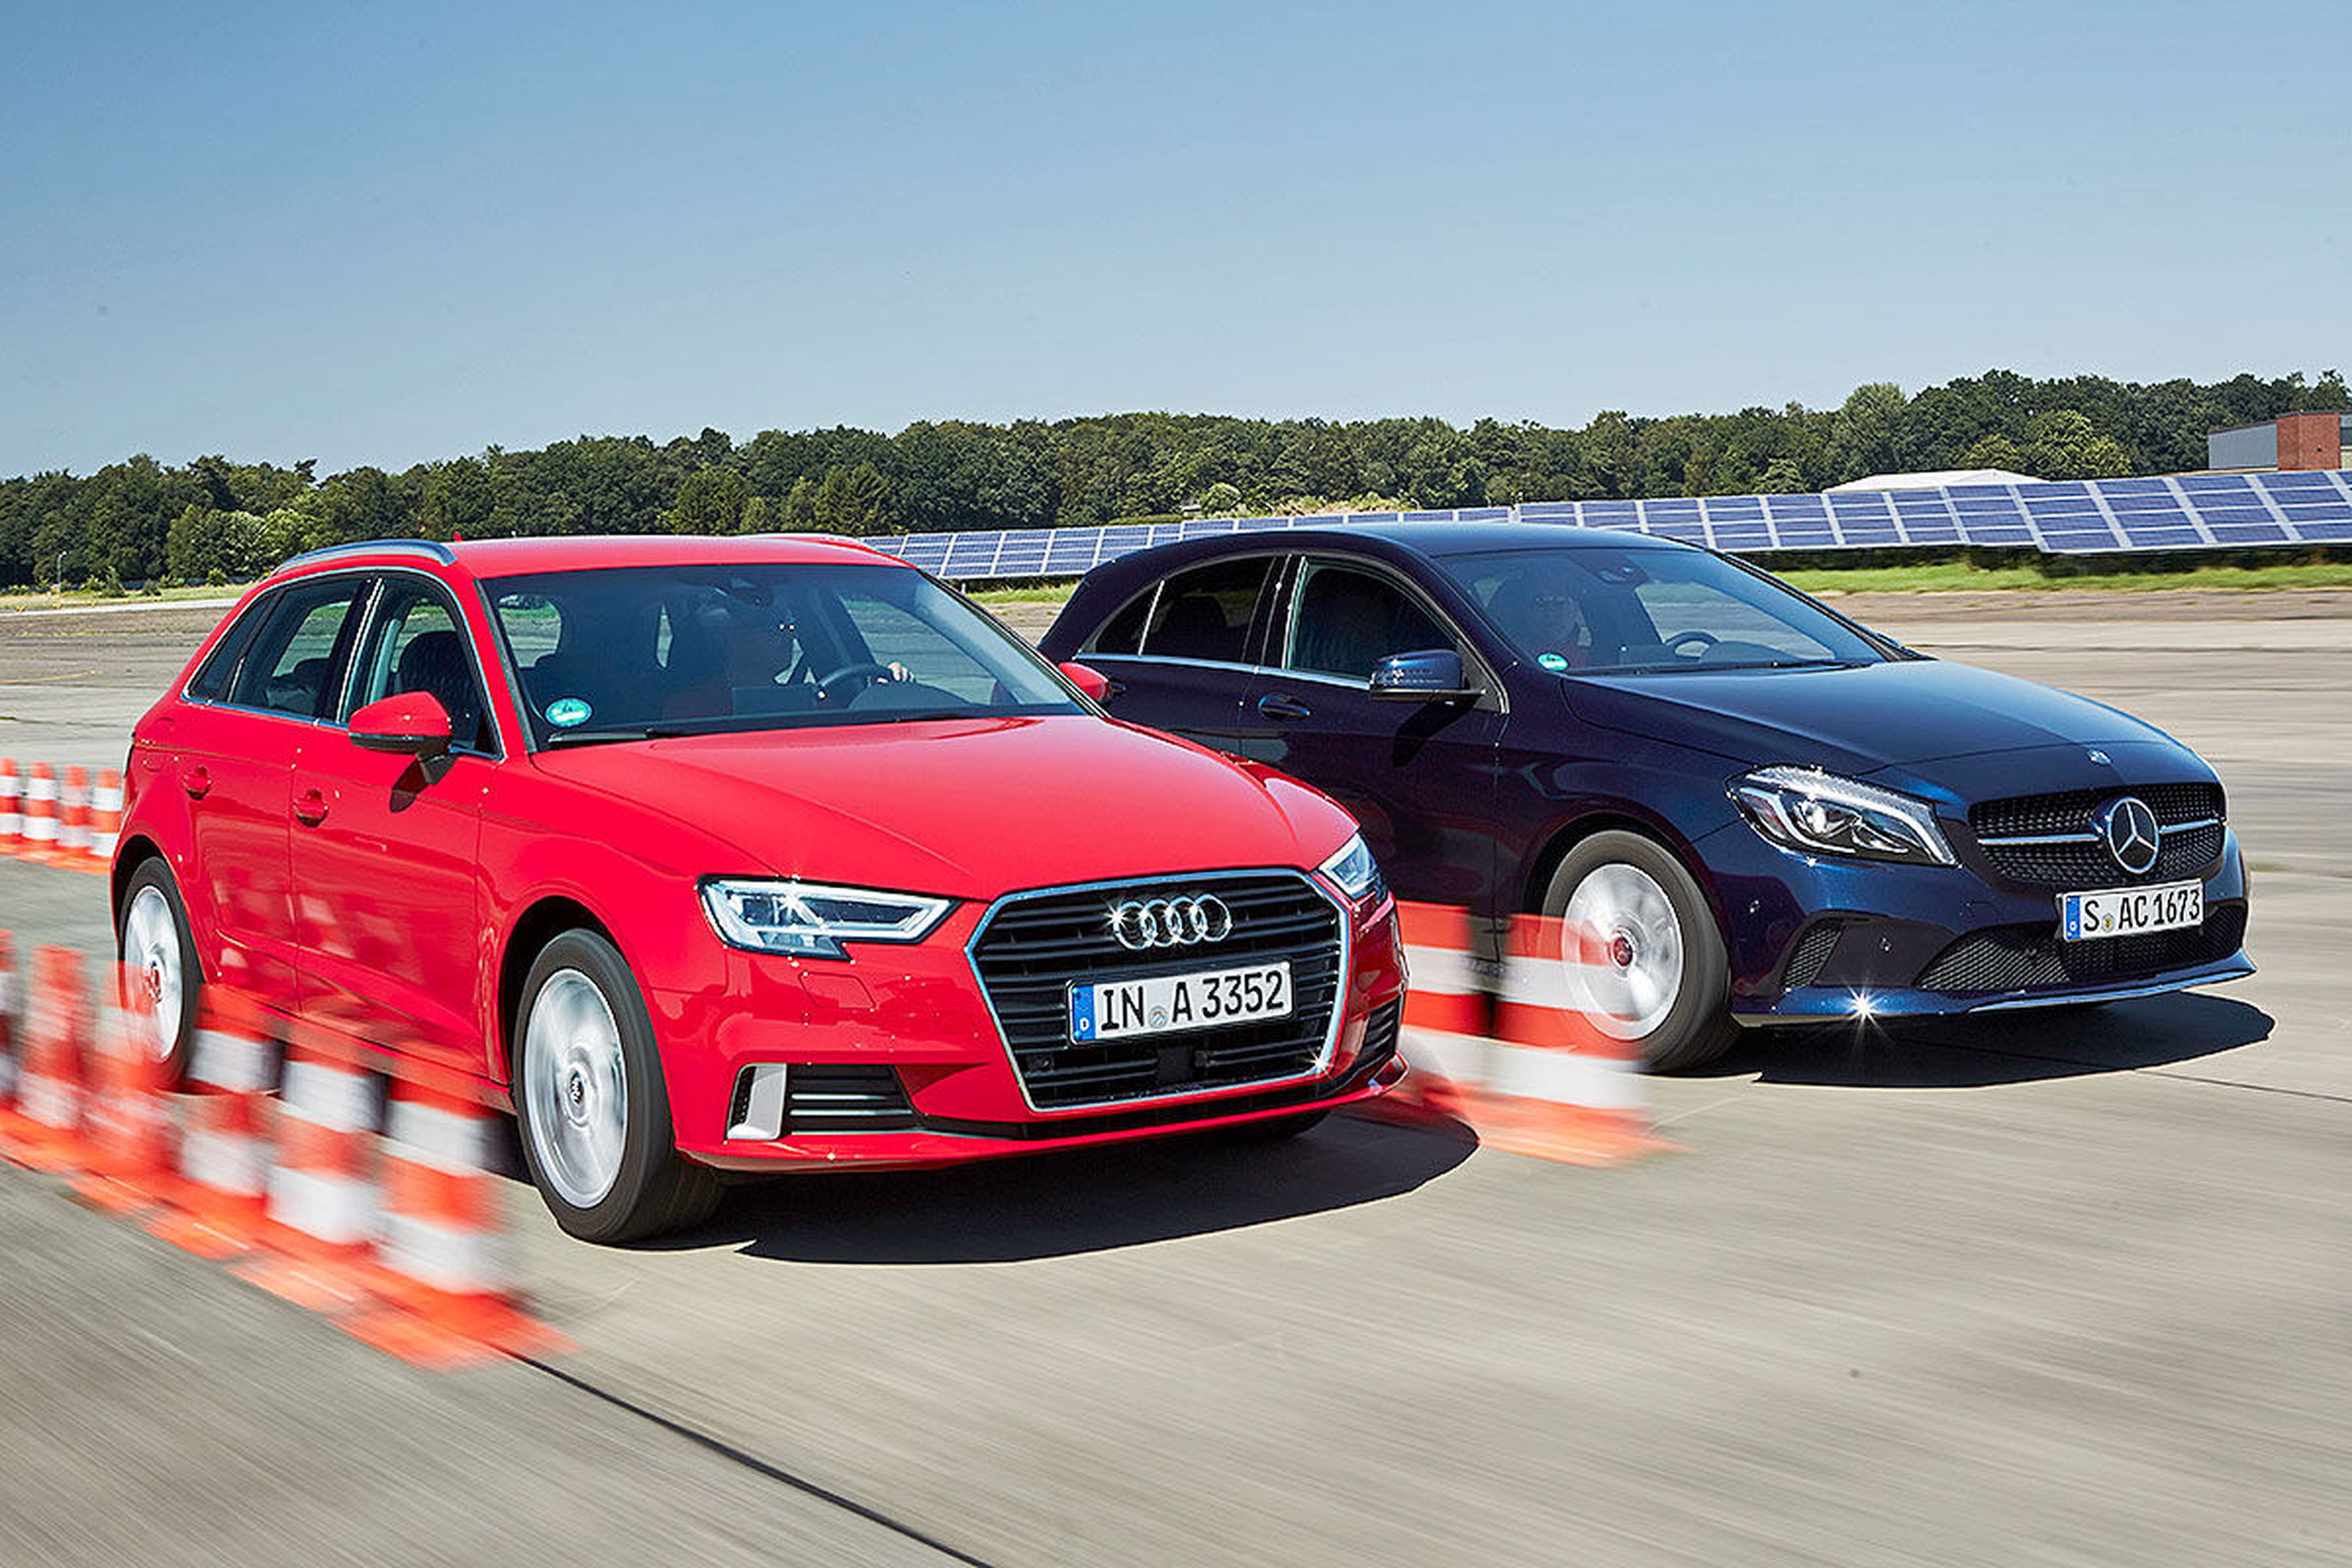 Cara a cara: Audi A3 Sportback vs Mercedes Clase A